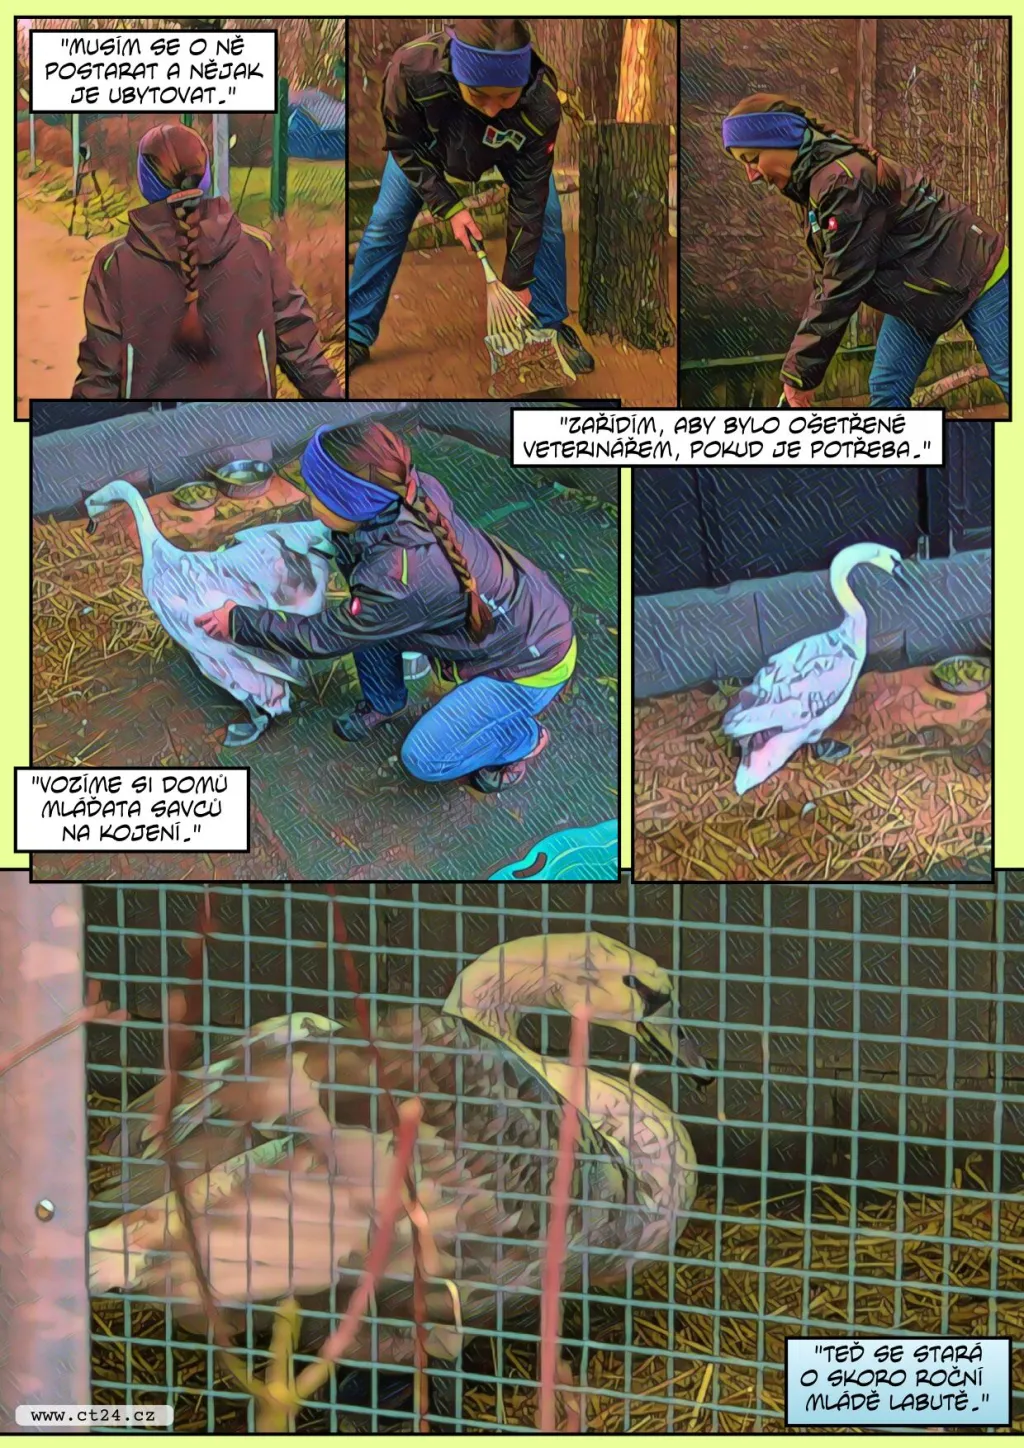 Unikátní operace poraněné labutě. Záchranná stanice Archa v Liberci pomáhá zvířatům